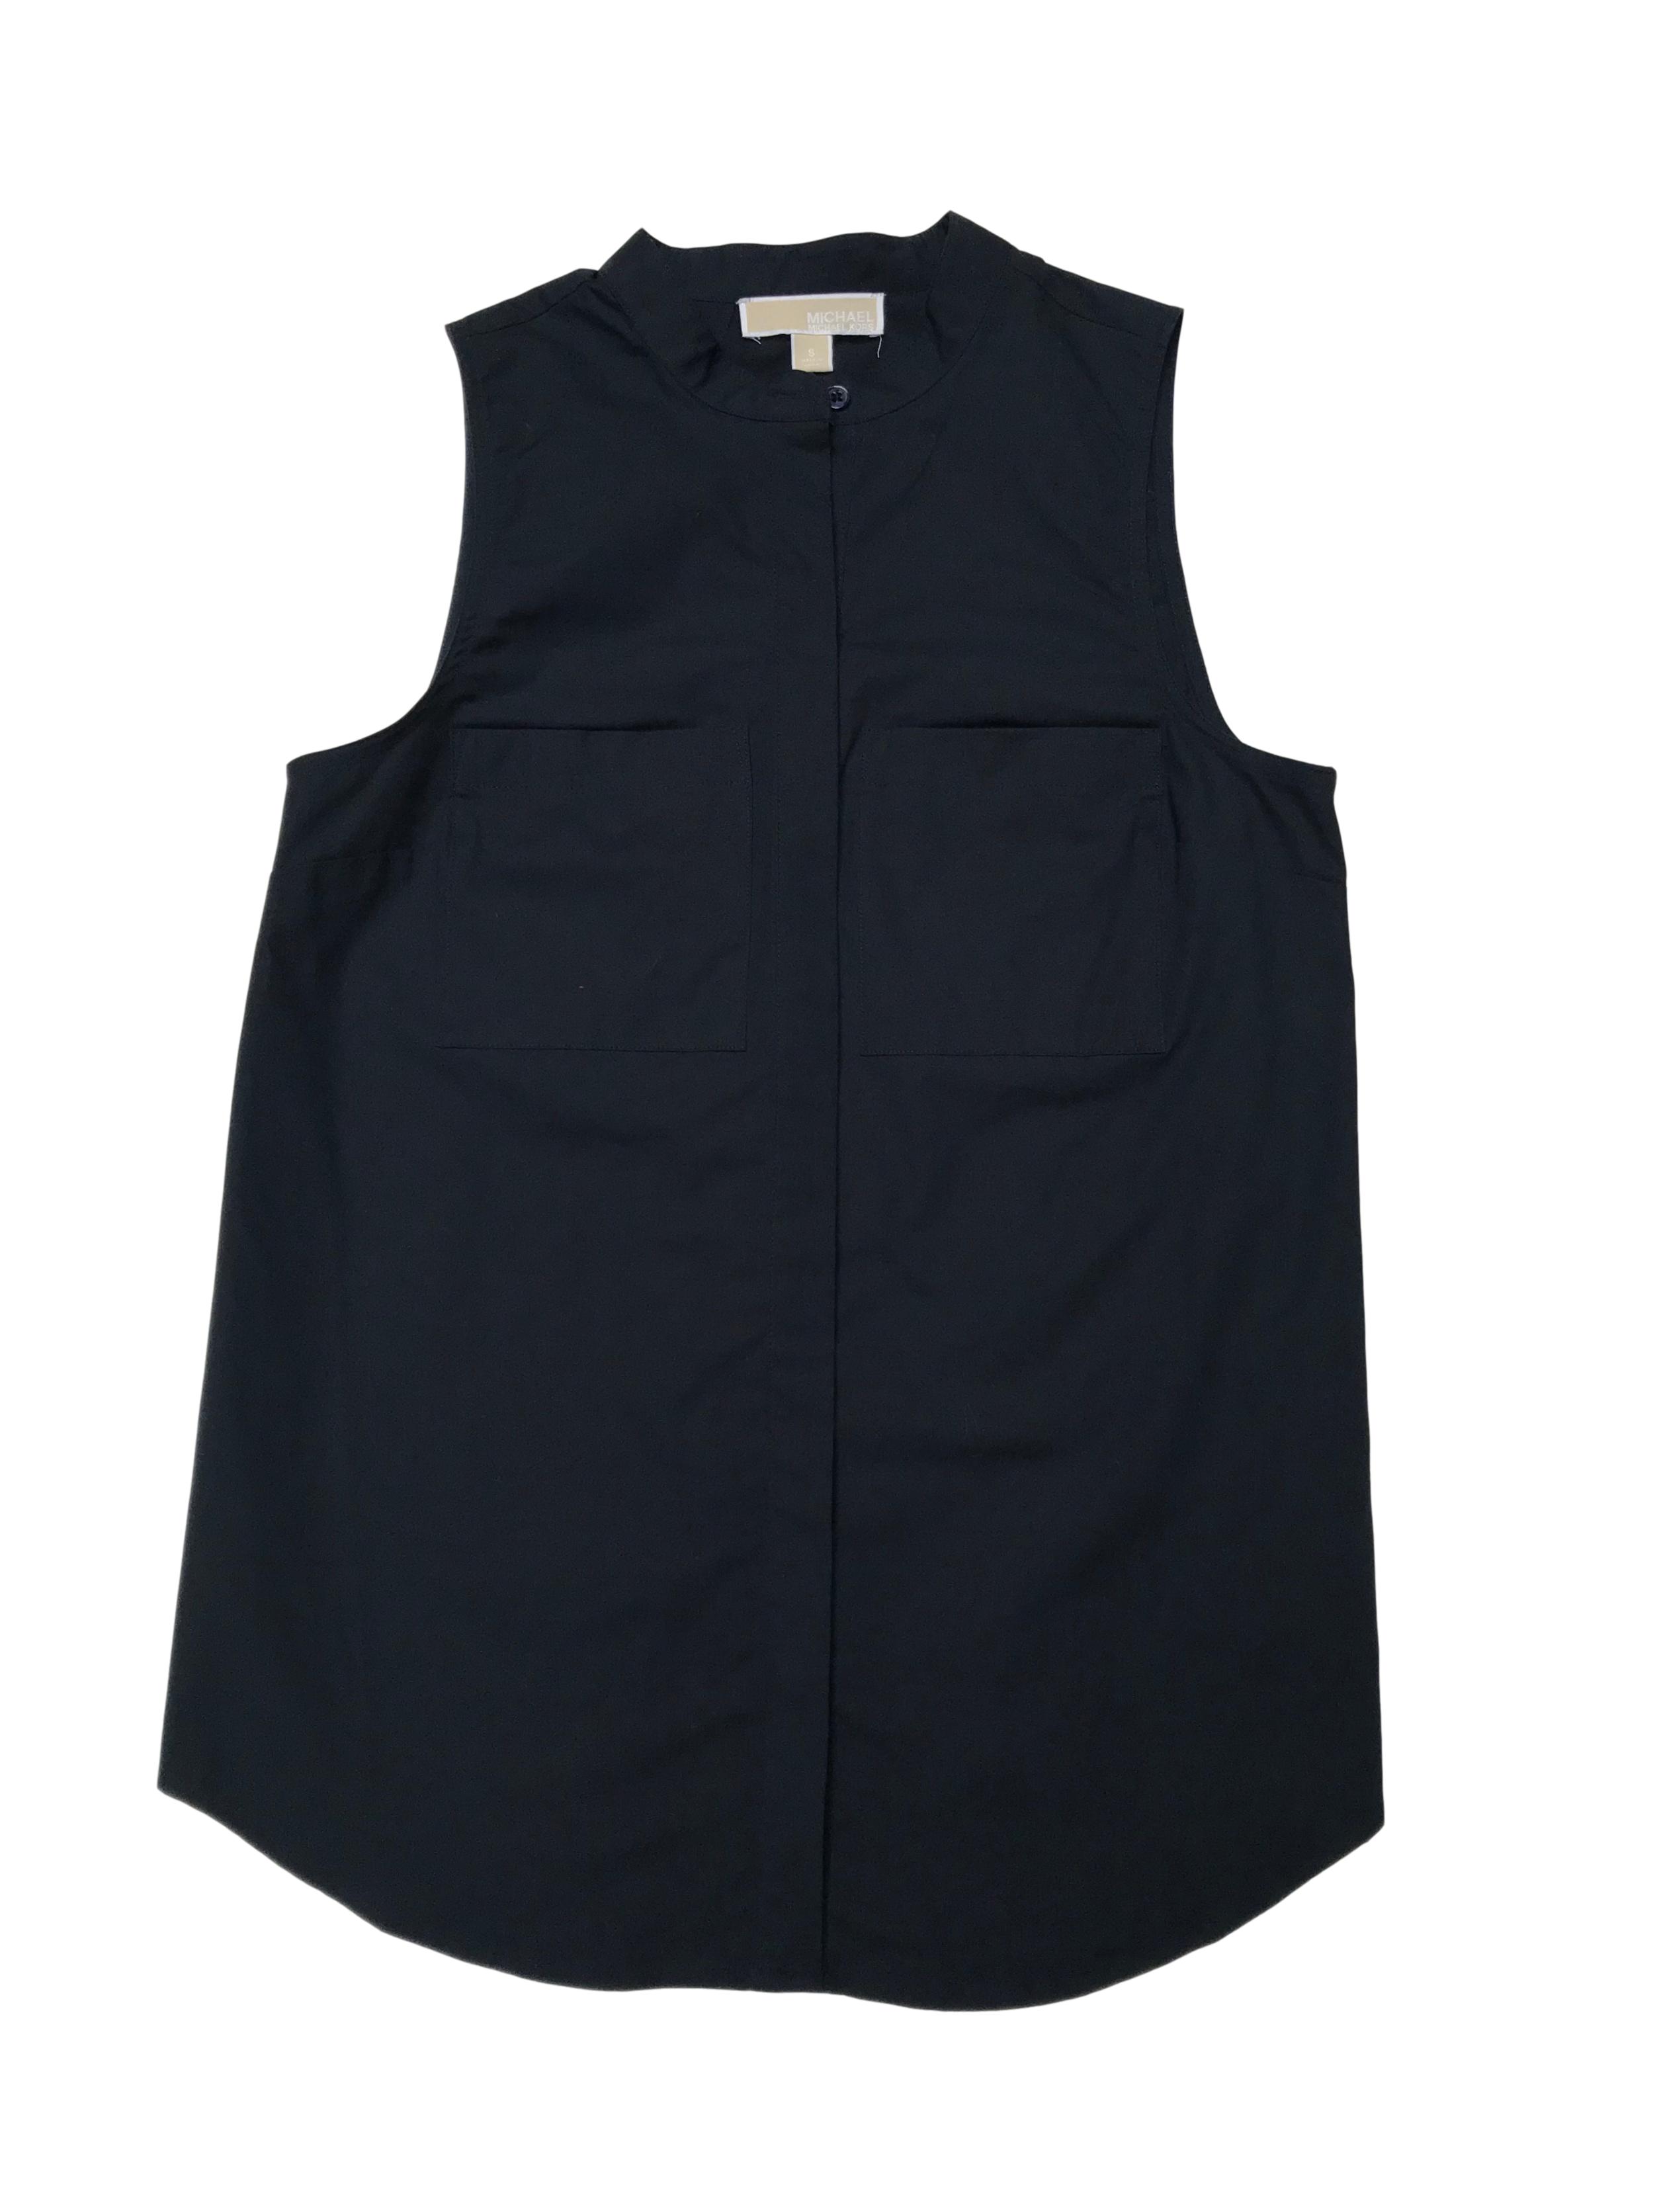 Blusa Michael Kors de algodón tipo camisa, cuello nerú con botones y bolsillos delanteros. Busto 94cm Largo 68cm. Precio original S/ 350